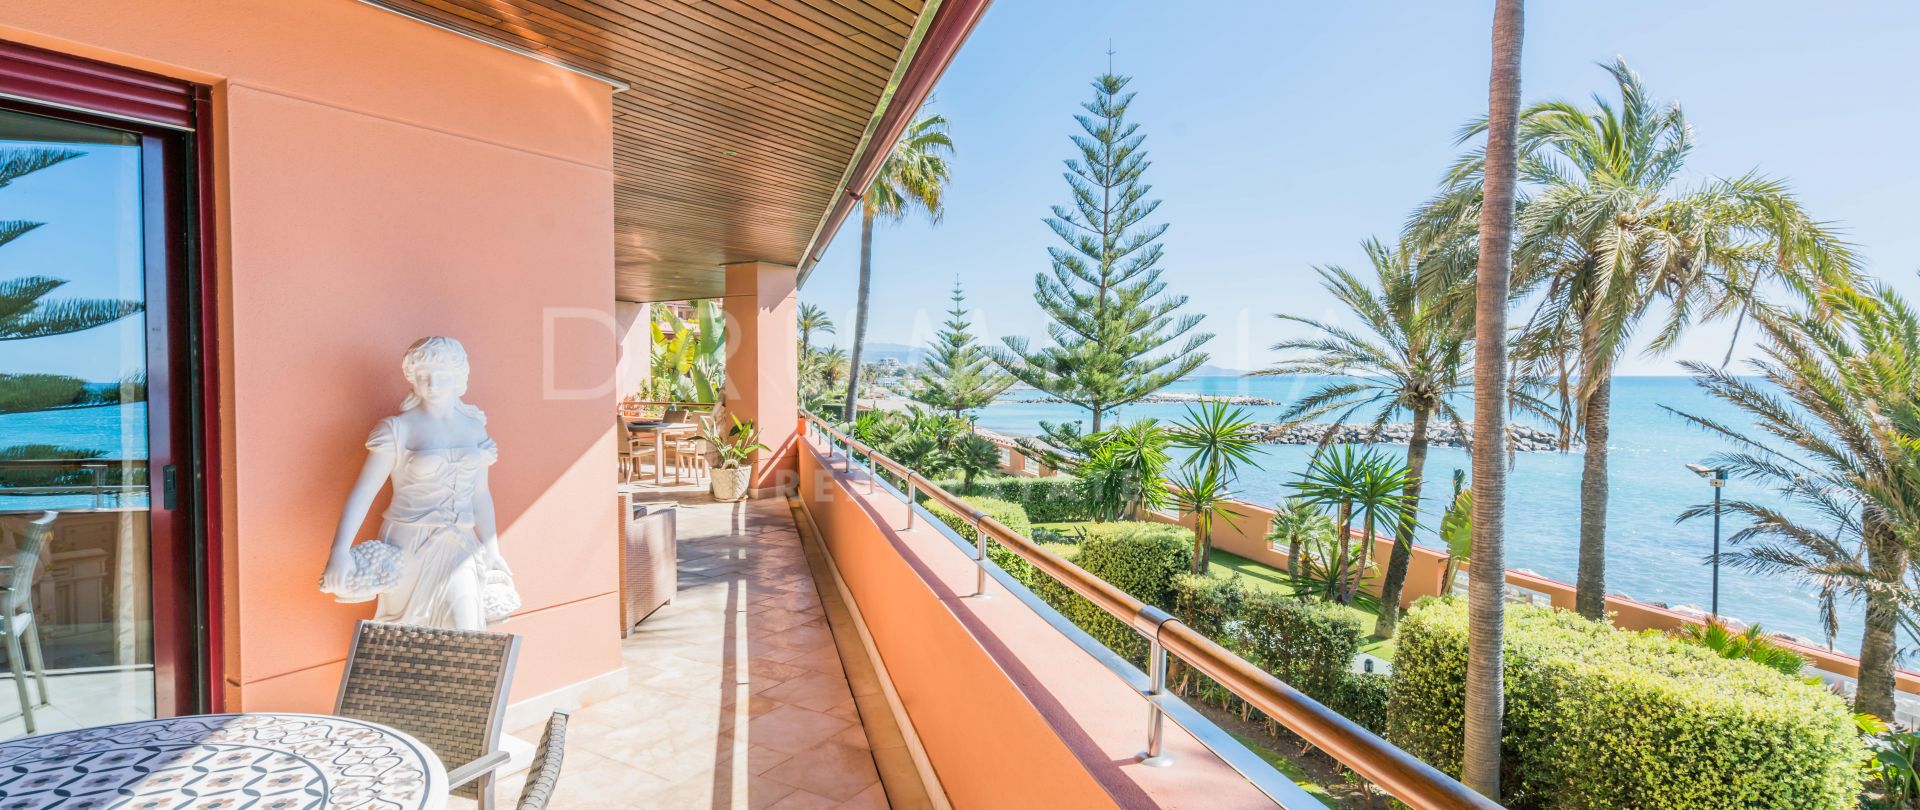 Elegantes fabelhaftes Frontline-Strand-Luxus-Apartment in Malibu, Puerto Banus